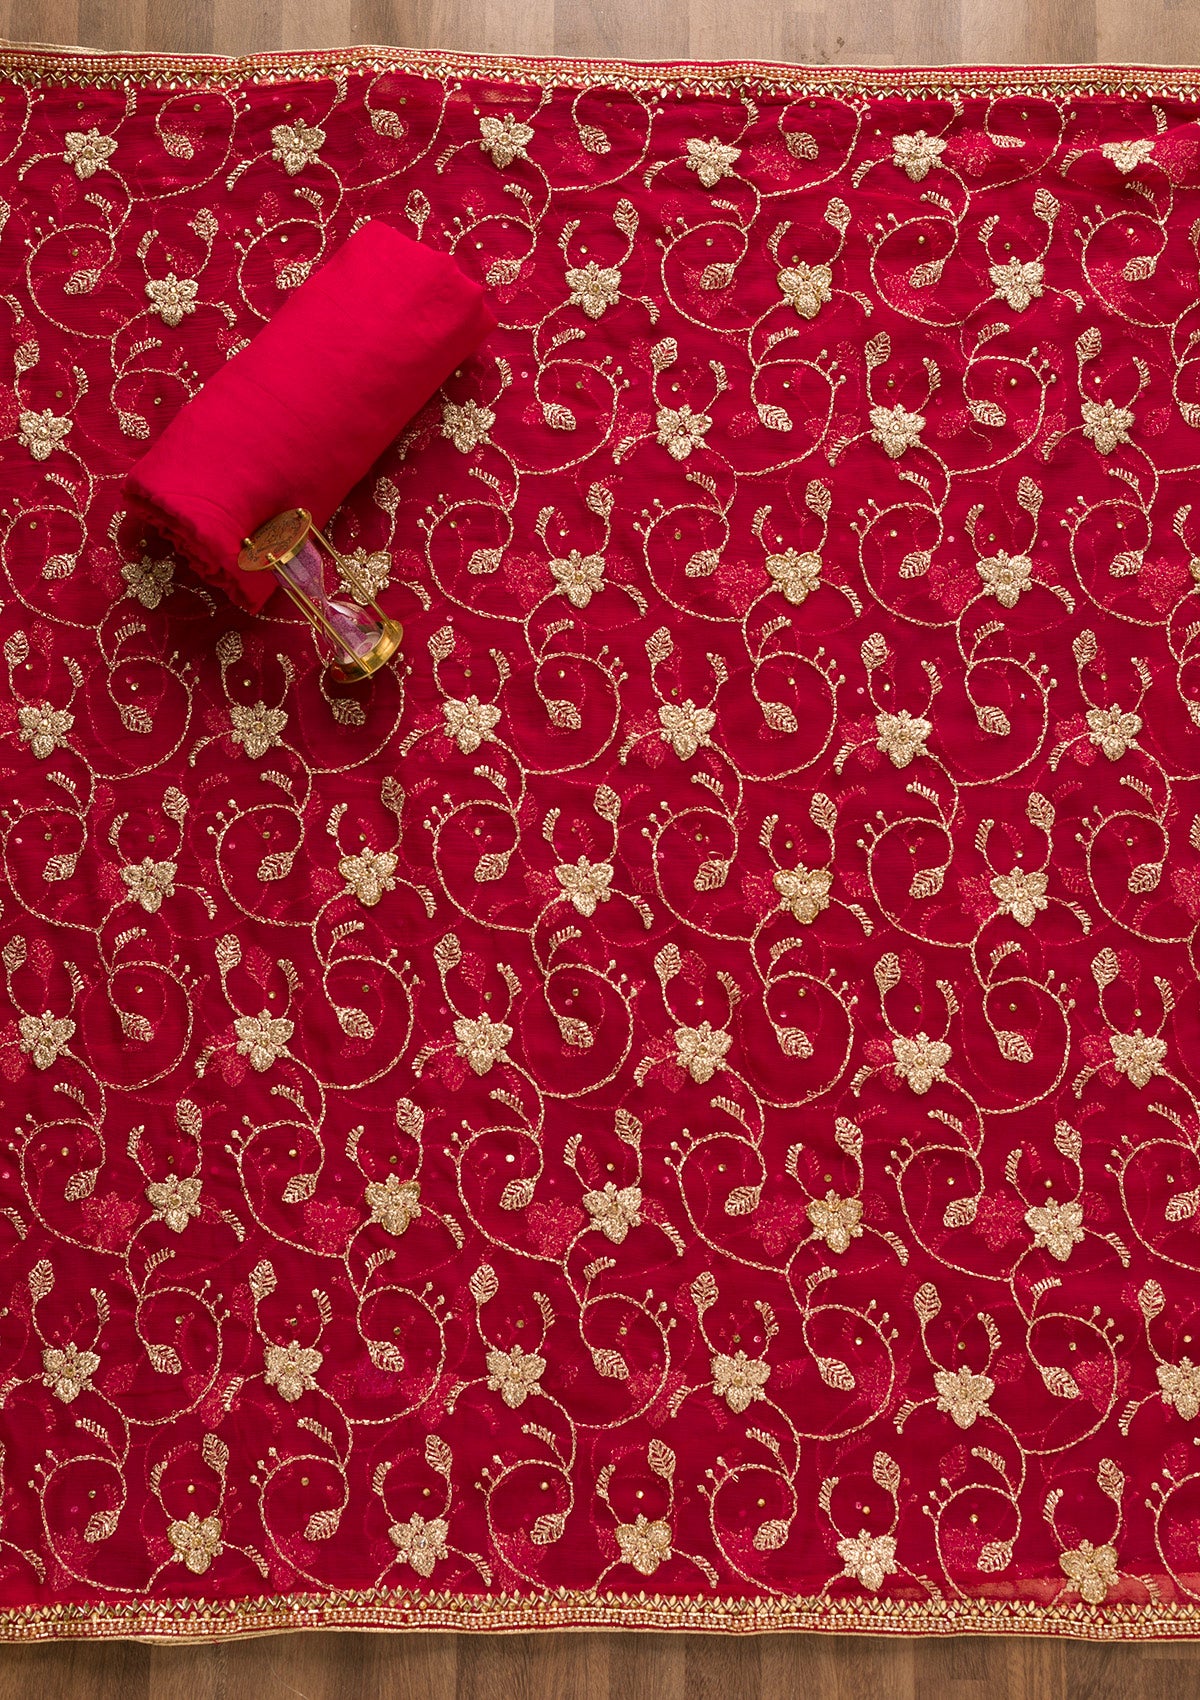 Rani Pink Sequins Georgette Unstitched Salwar Suit